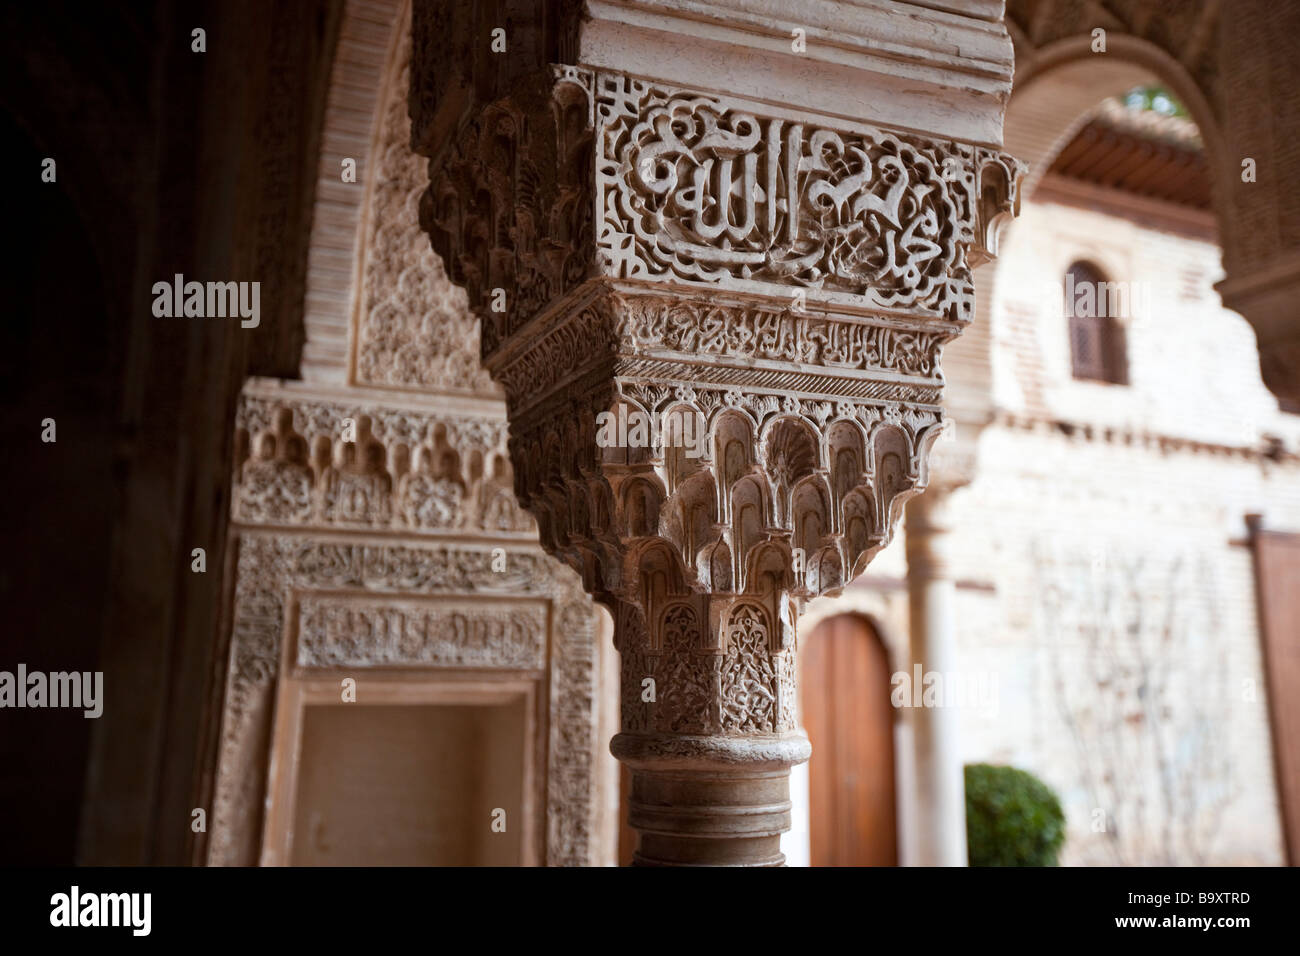 Arabische Inschrift und Details in den Generalife Palast der Alhambra in Granada Spanien Stockfoto